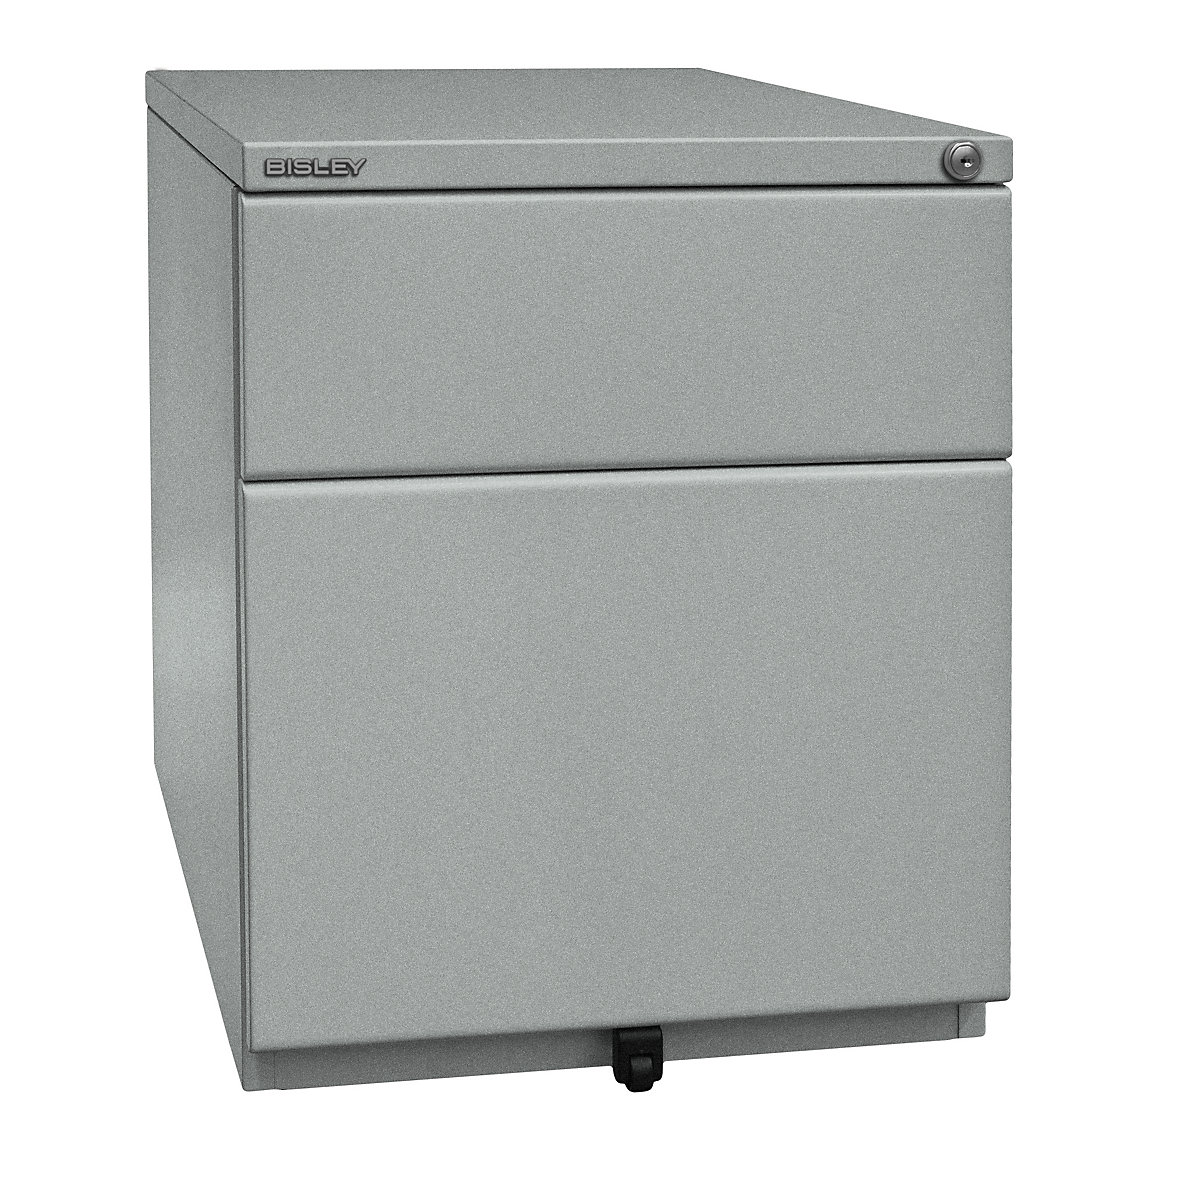 OBA mobile pedestal – BISLEY, 1 drawer, 1 suspension file drawer, silver-3